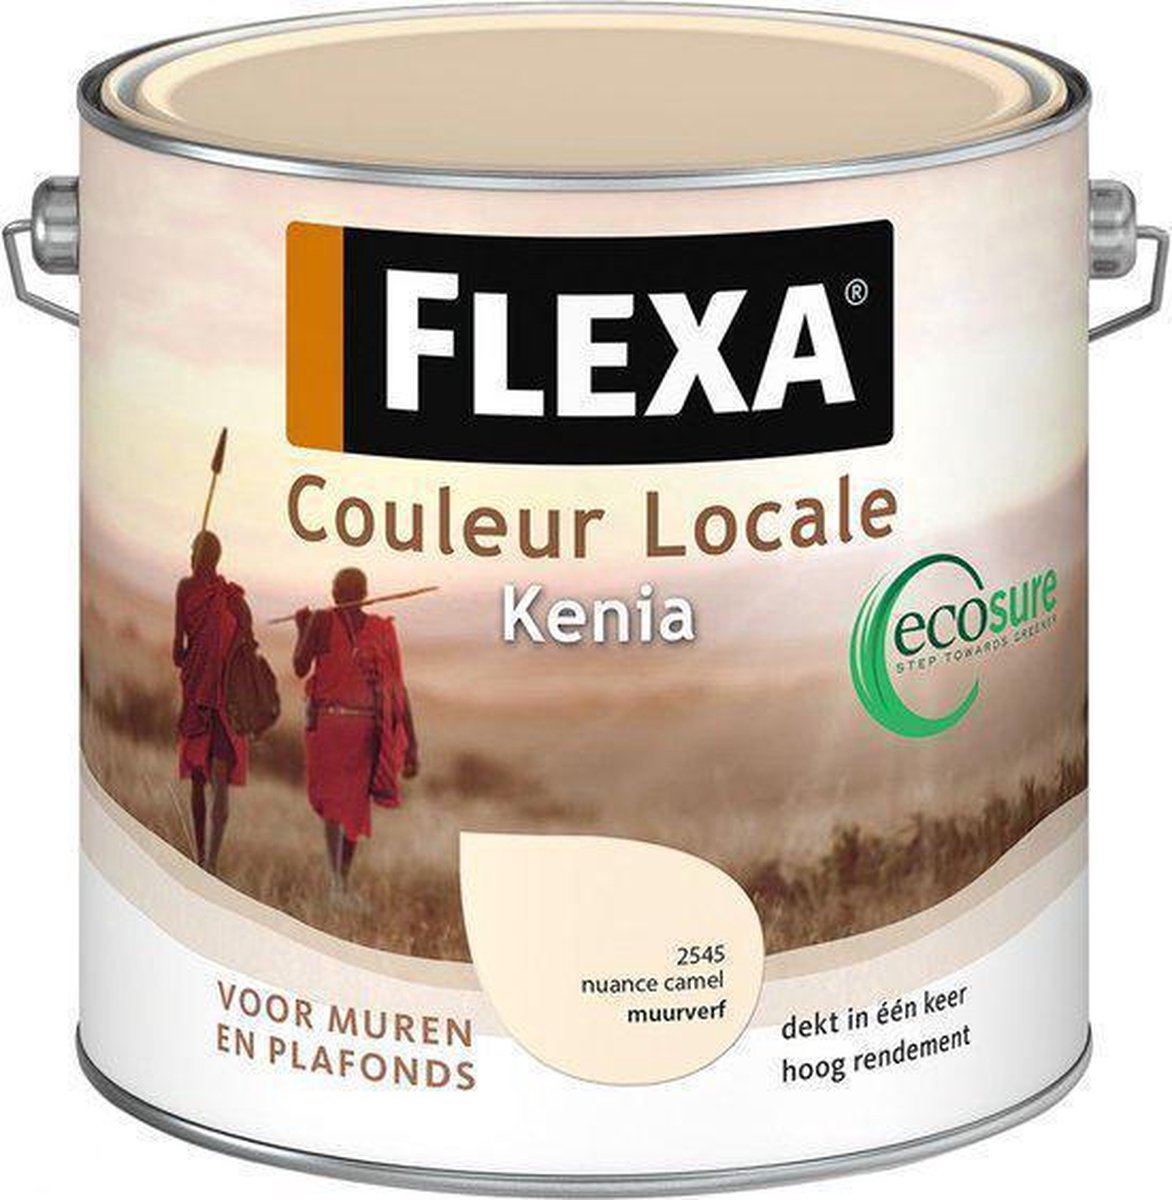 Flexa Couleur Locale Muurverf Ecosure Kenia 2.5 L 2545 Nuance Camel